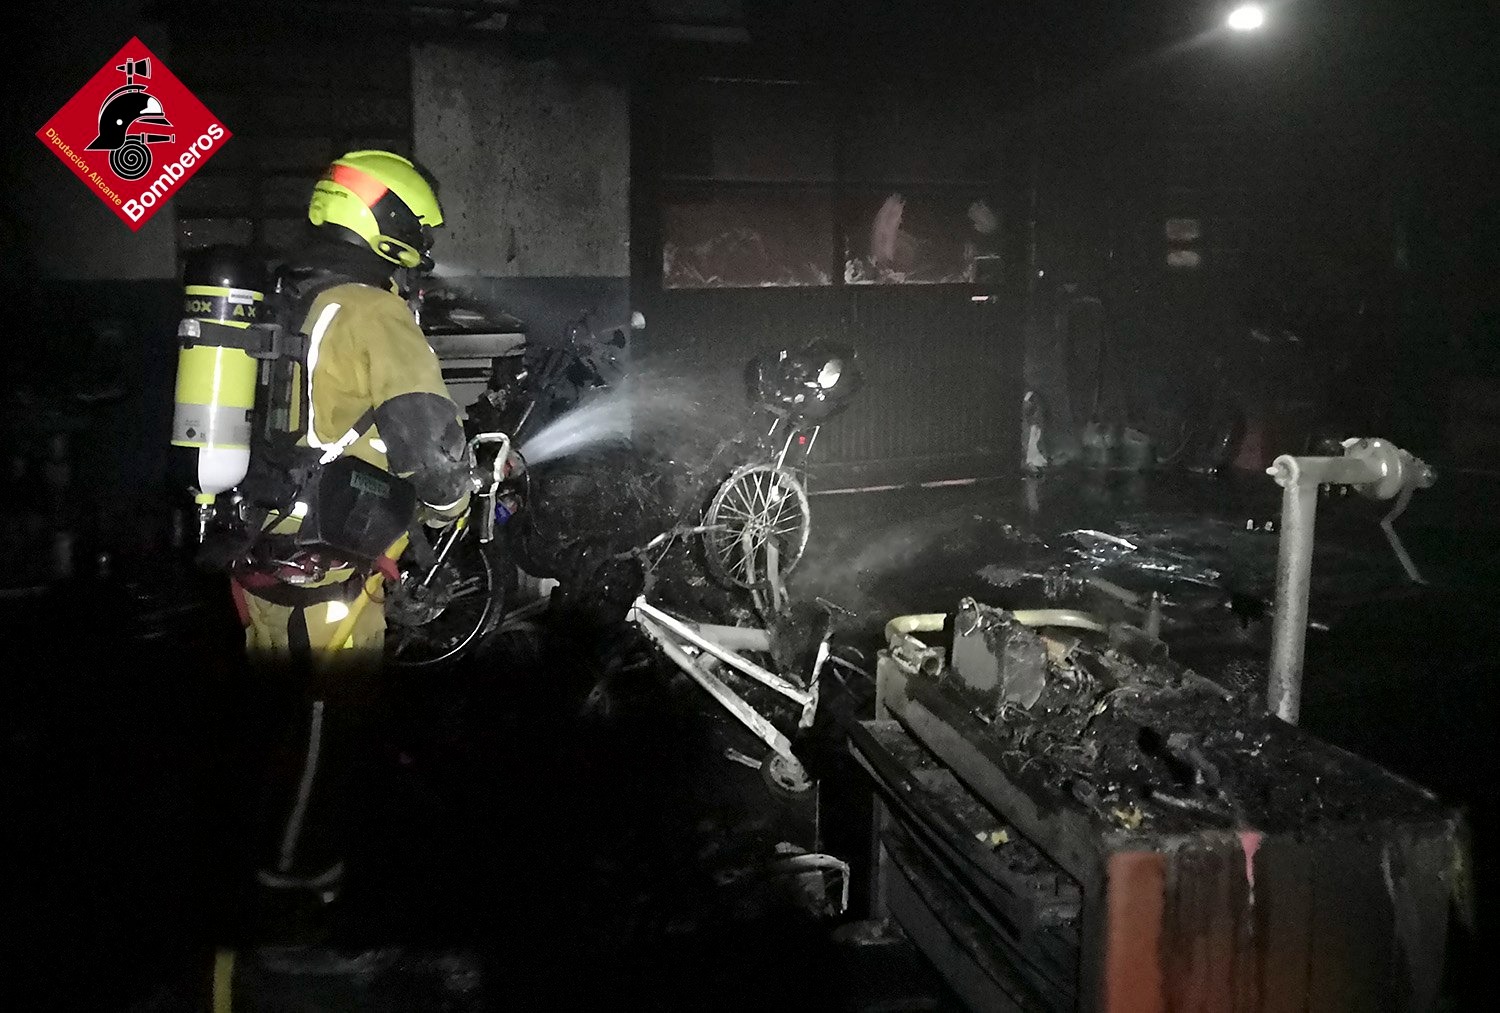 Los bomberos sofocan un incendio en un taller mecánico de Beneixama